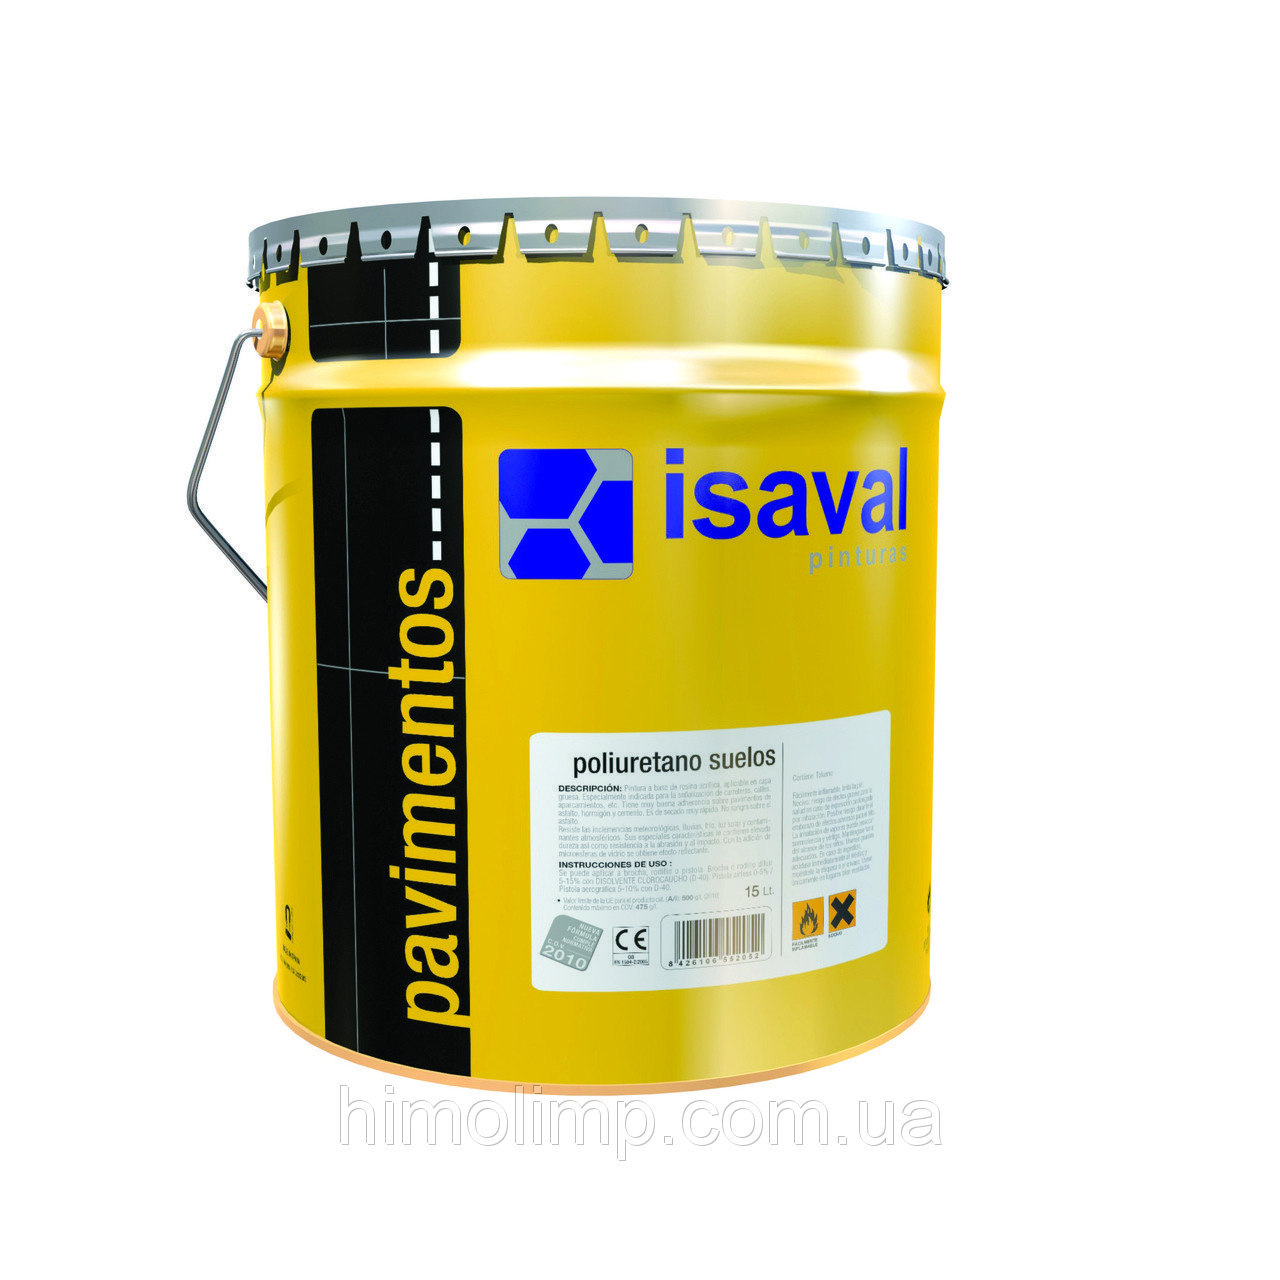 Фарба поліуретанова ISAVAL Дуеполь 4 л сірий - для промислових бетонних підлог, паркінгів і гаражів